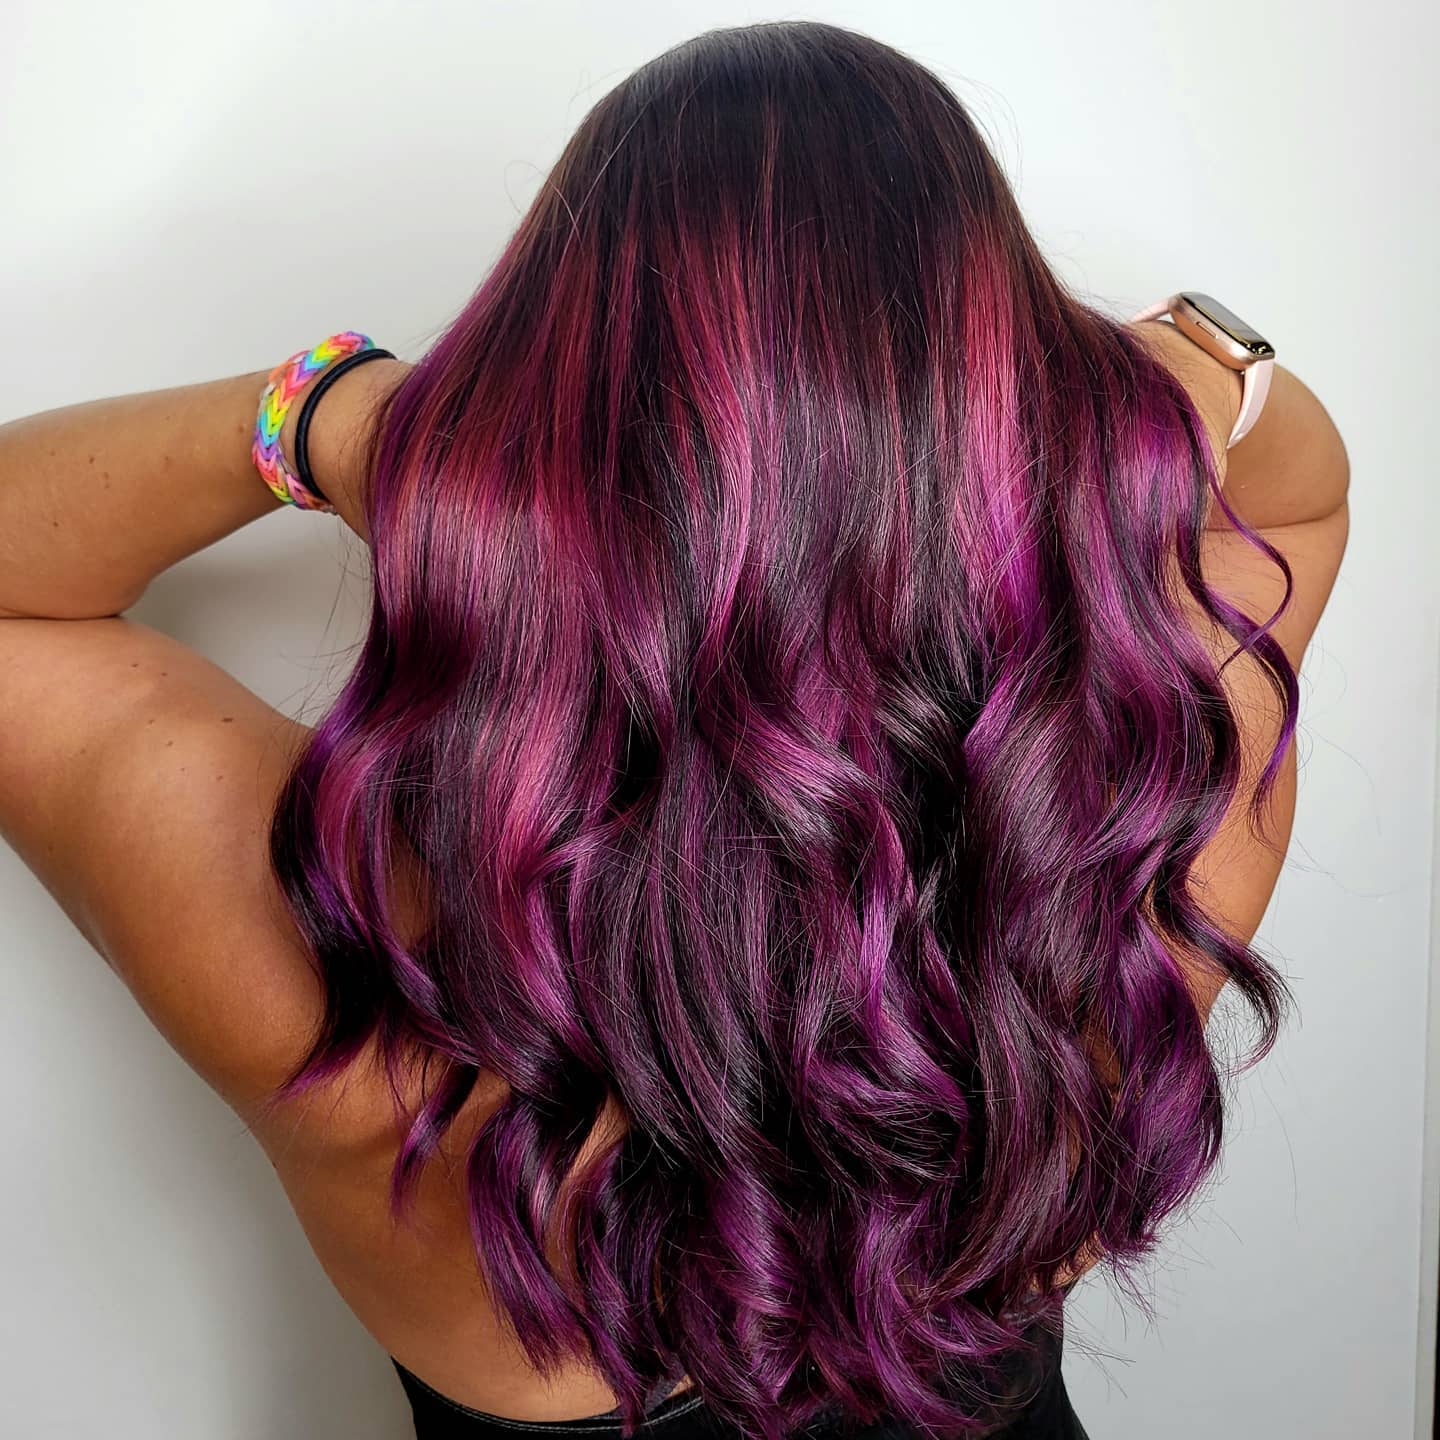 50+ Vibrant Fuchsia Hair Color Ideas For Any Hair Length